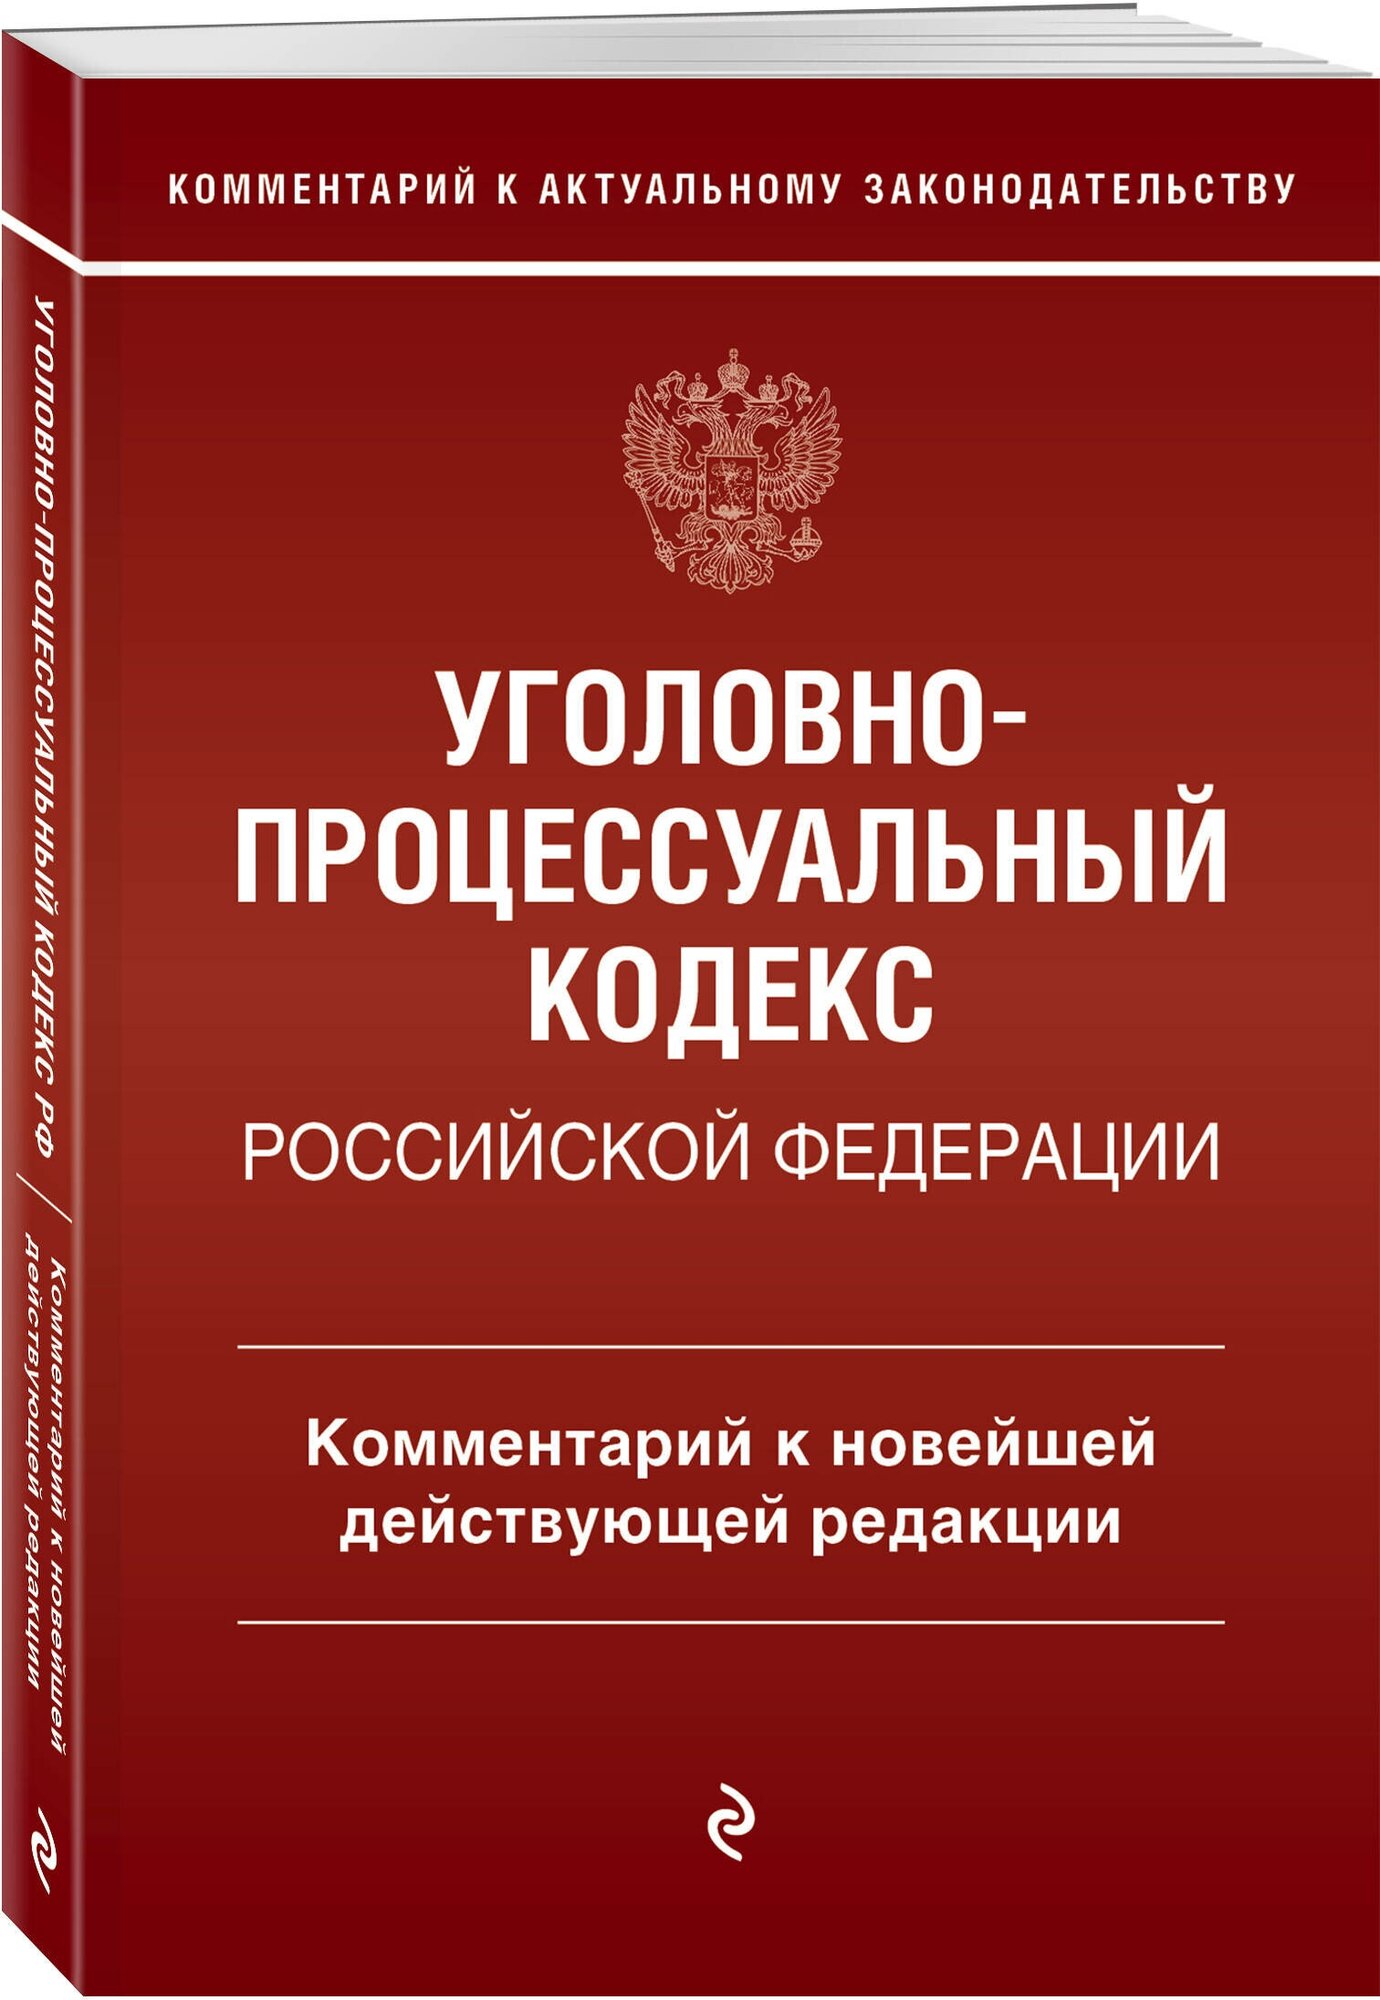 Уголовно-процессуальный кодекс Российской Федерации. Комментарий к новейшей действующей редакции.